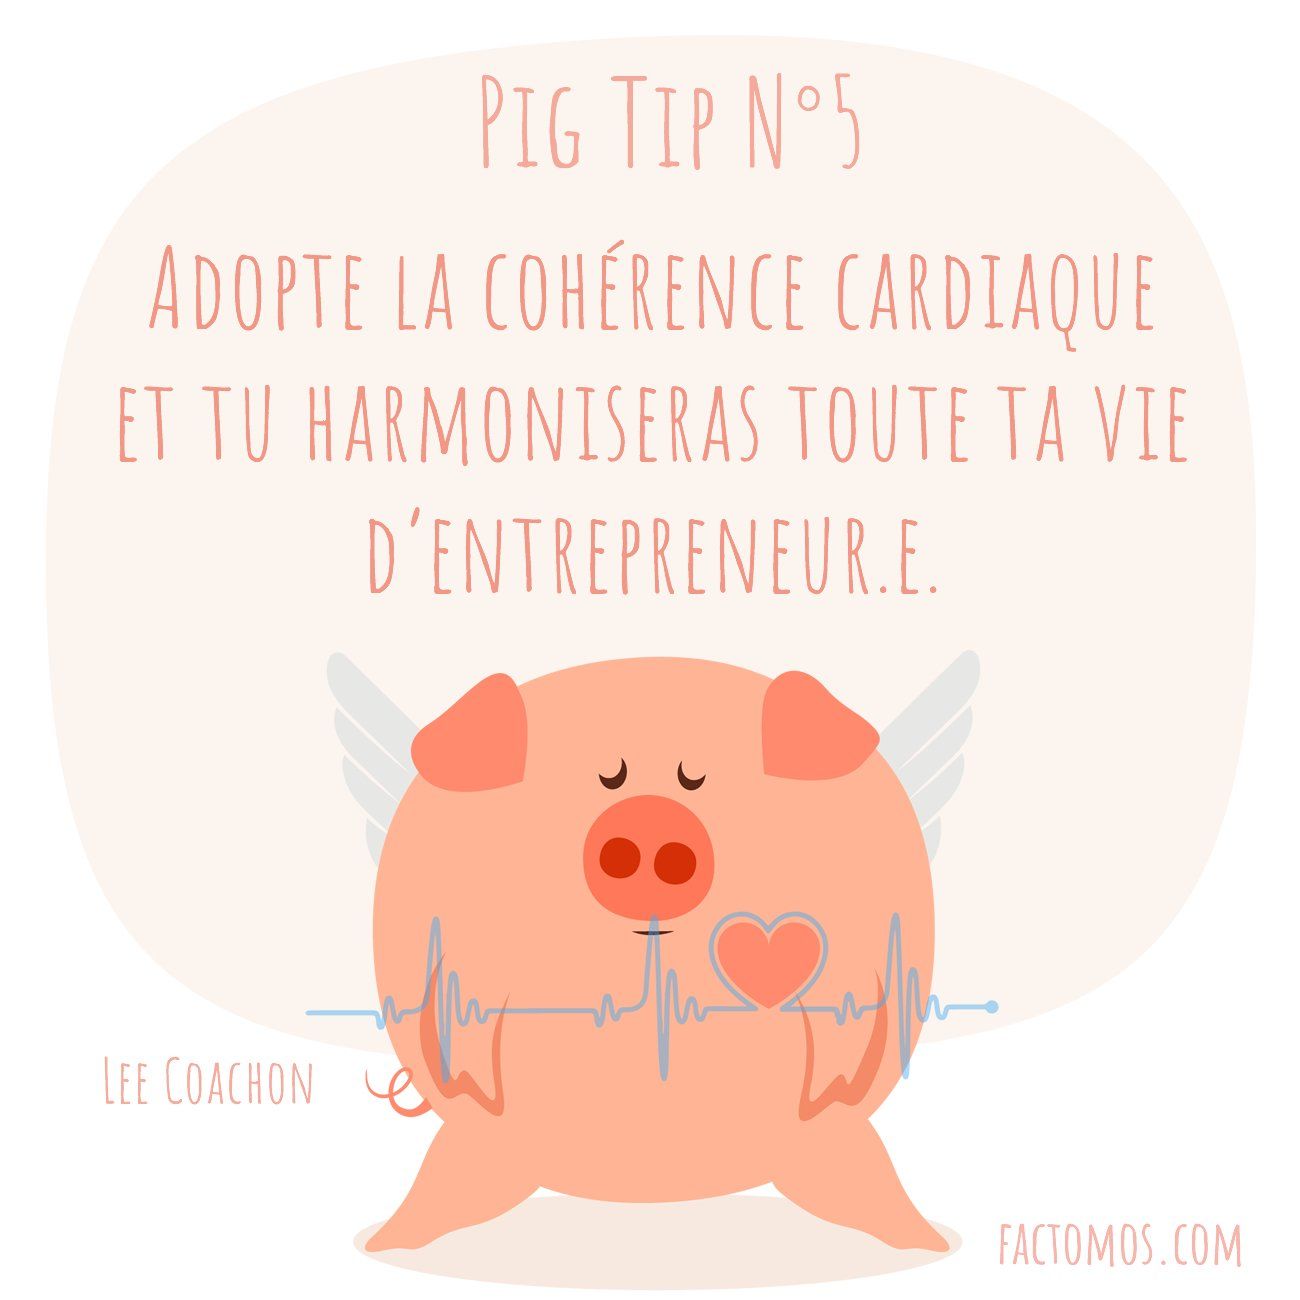 Pig Tip #5